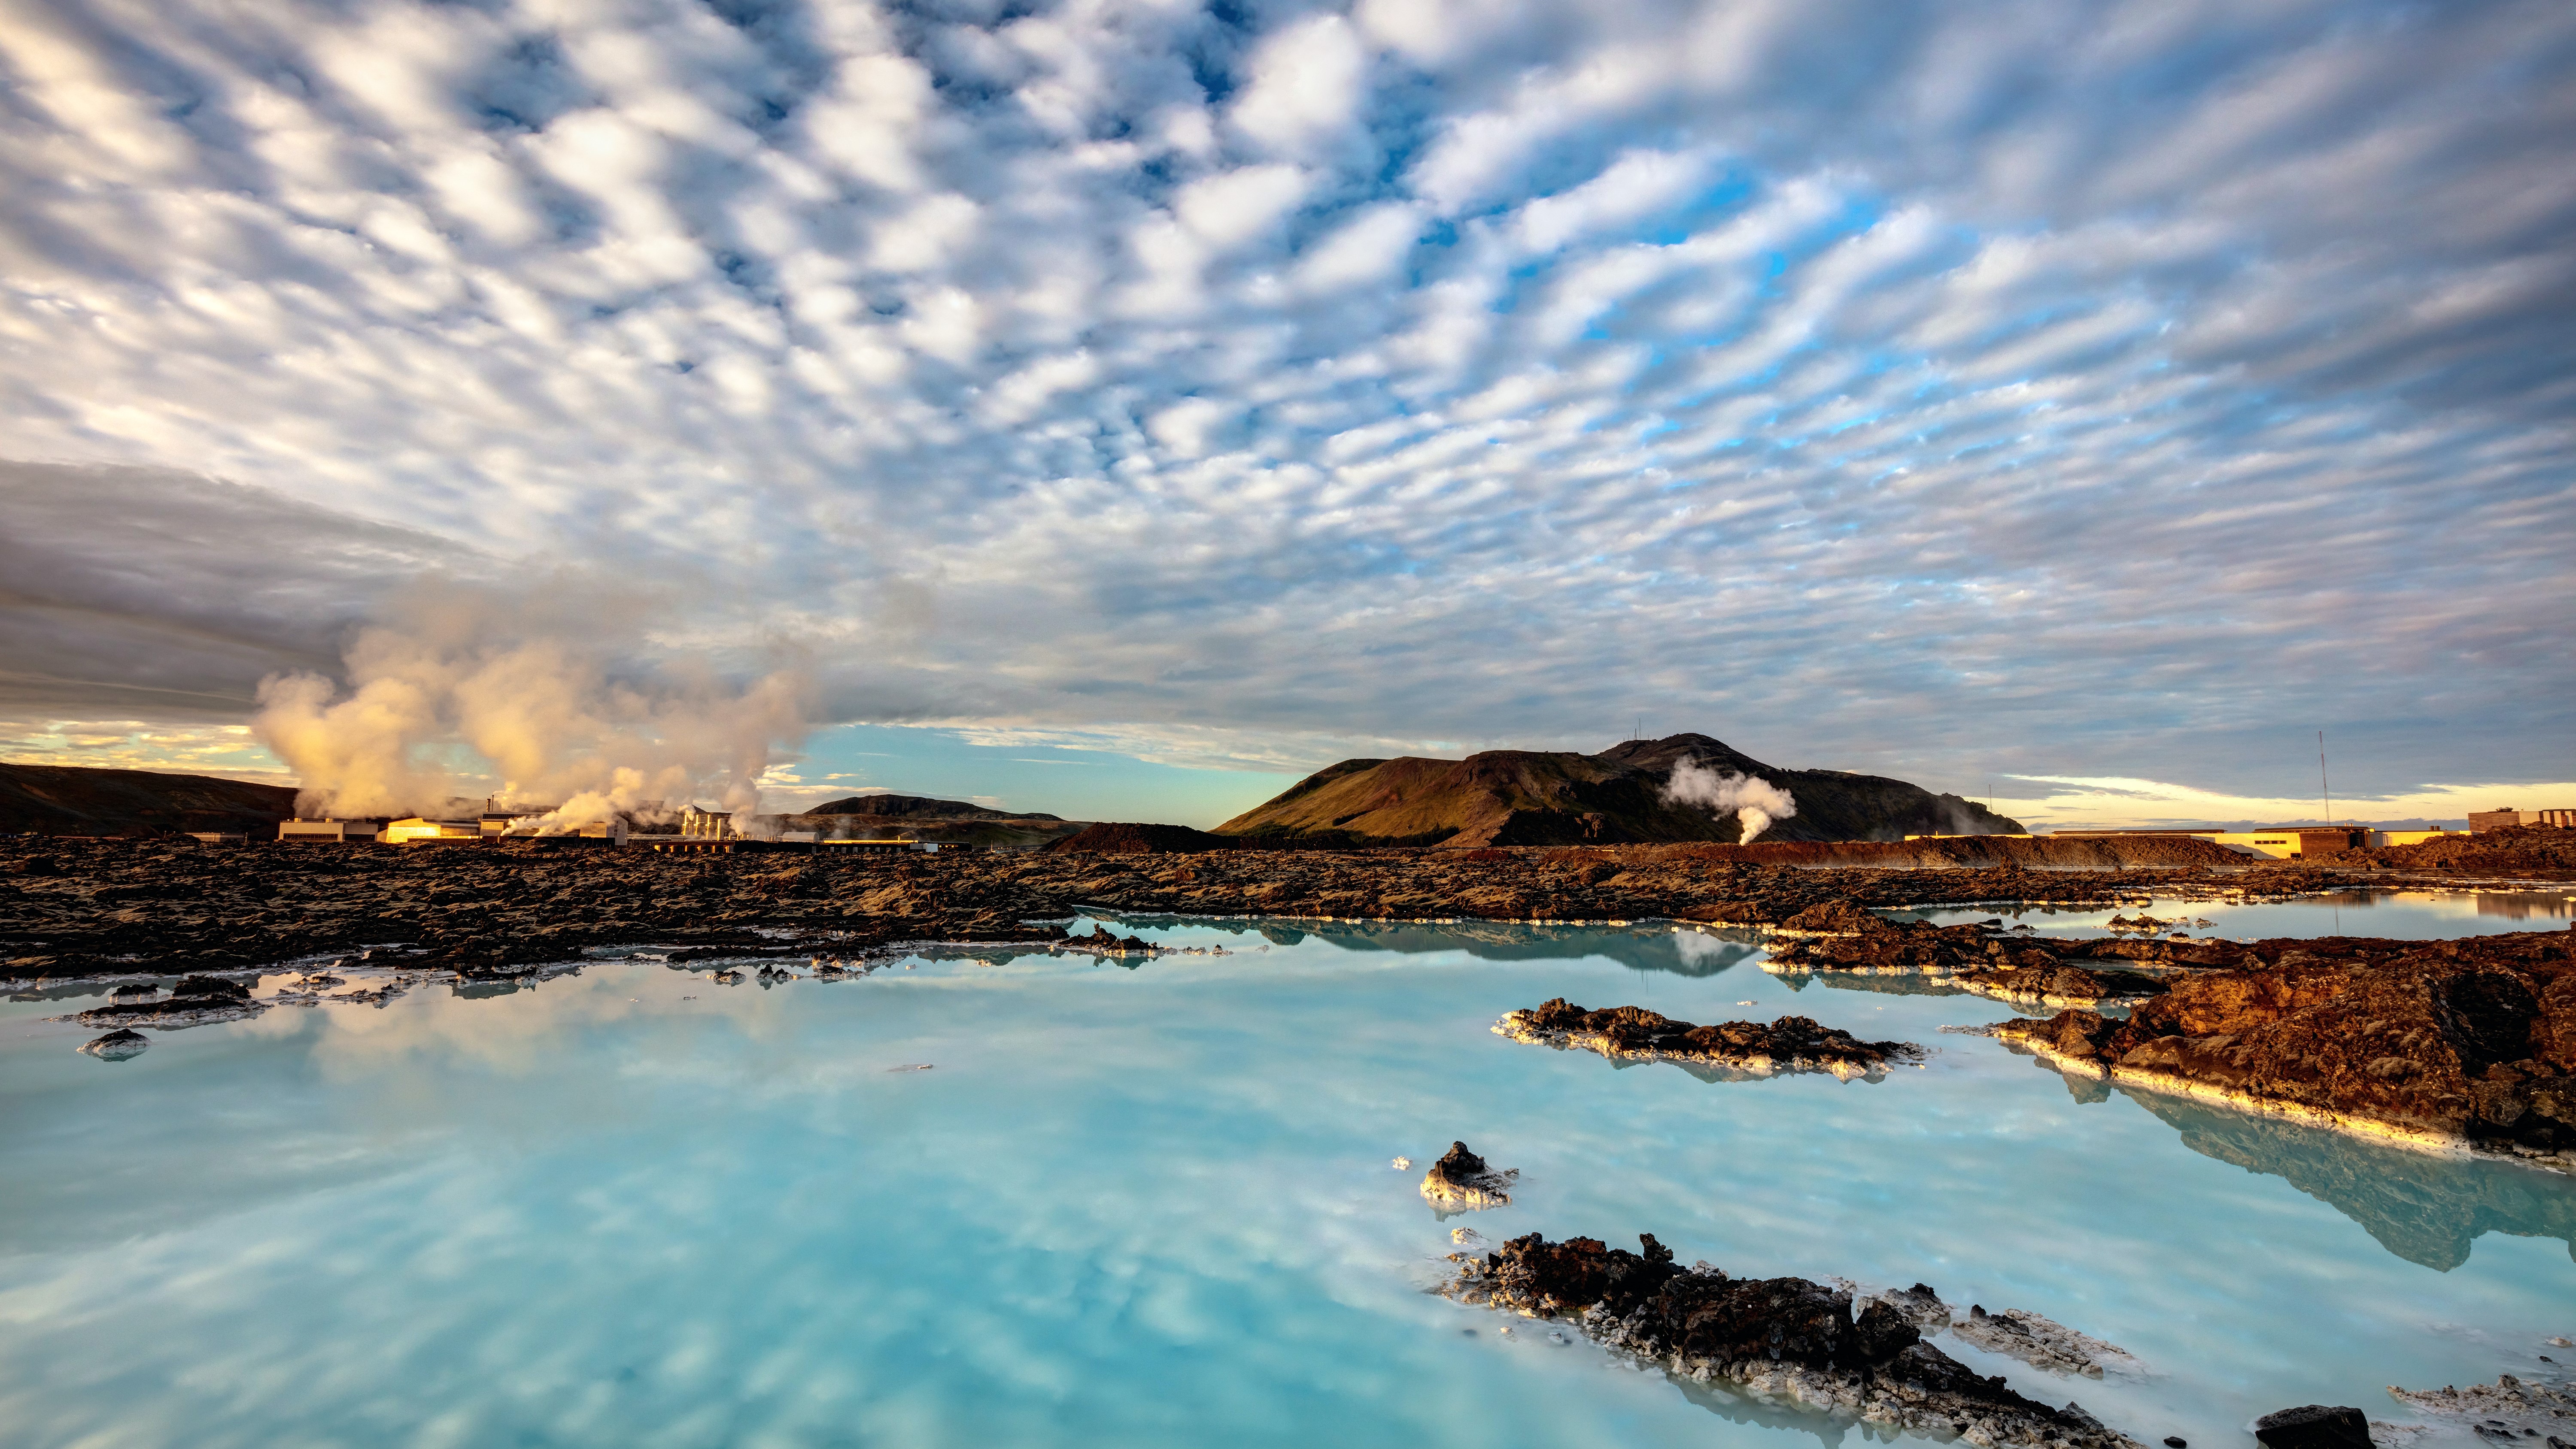 ابرهای شگفت انگیز و انعکاس در تالاب آبی در ایسلند.